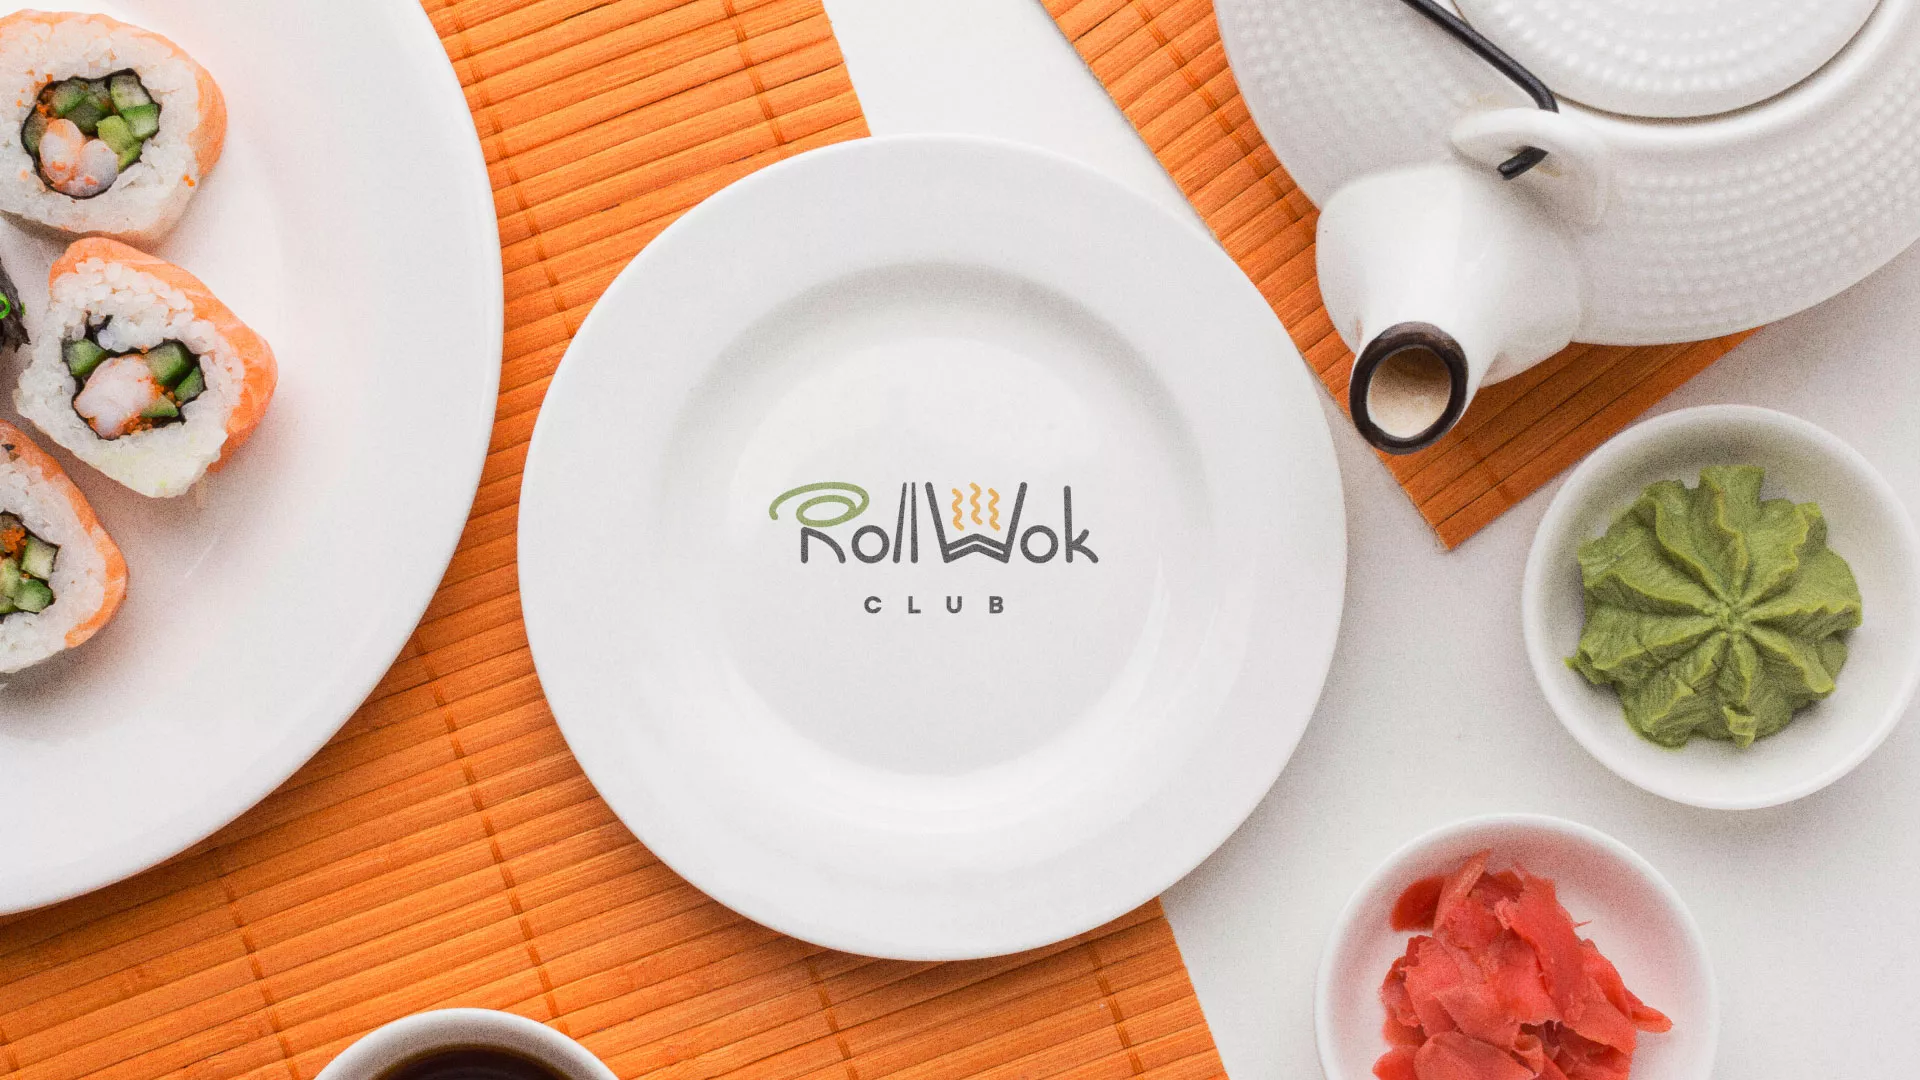 Разработка логотипа и фирменного стиля суши-бара «Roll Wok Club» в Мытищах